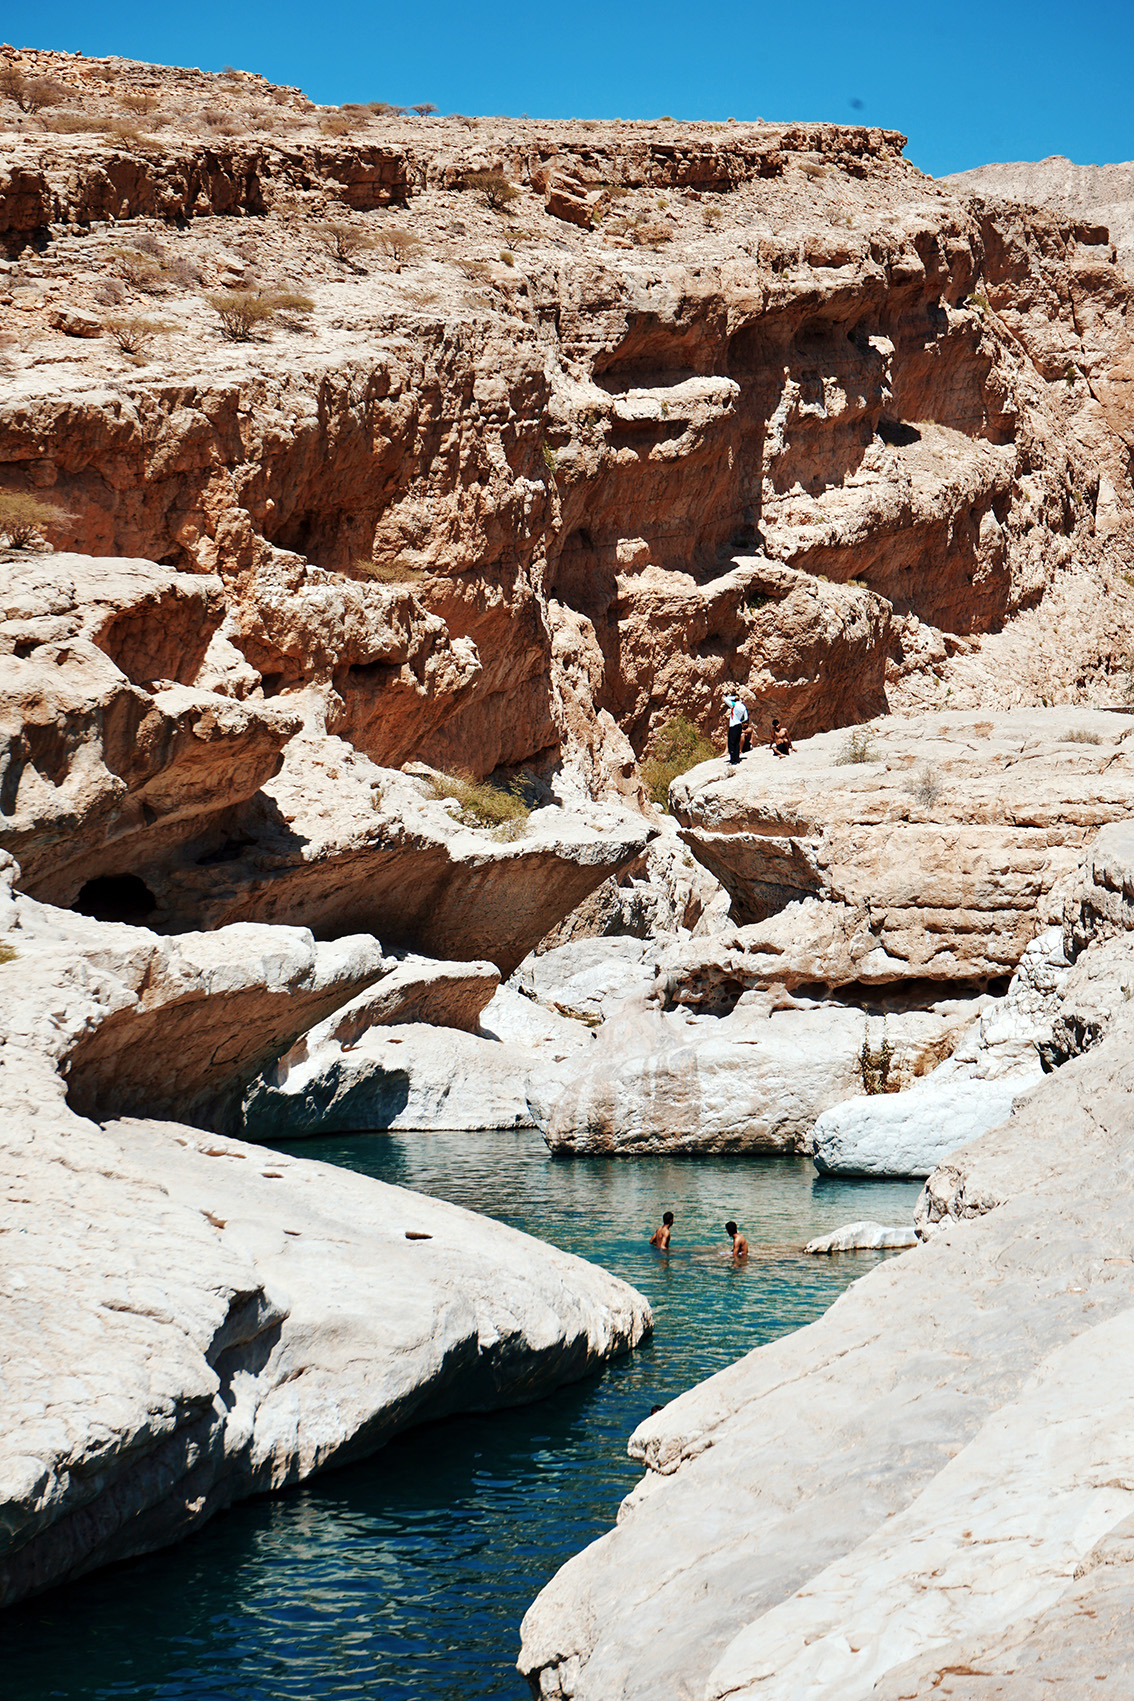 31 La mia avventura in Oman, i luoghi imperdibili da vedere.